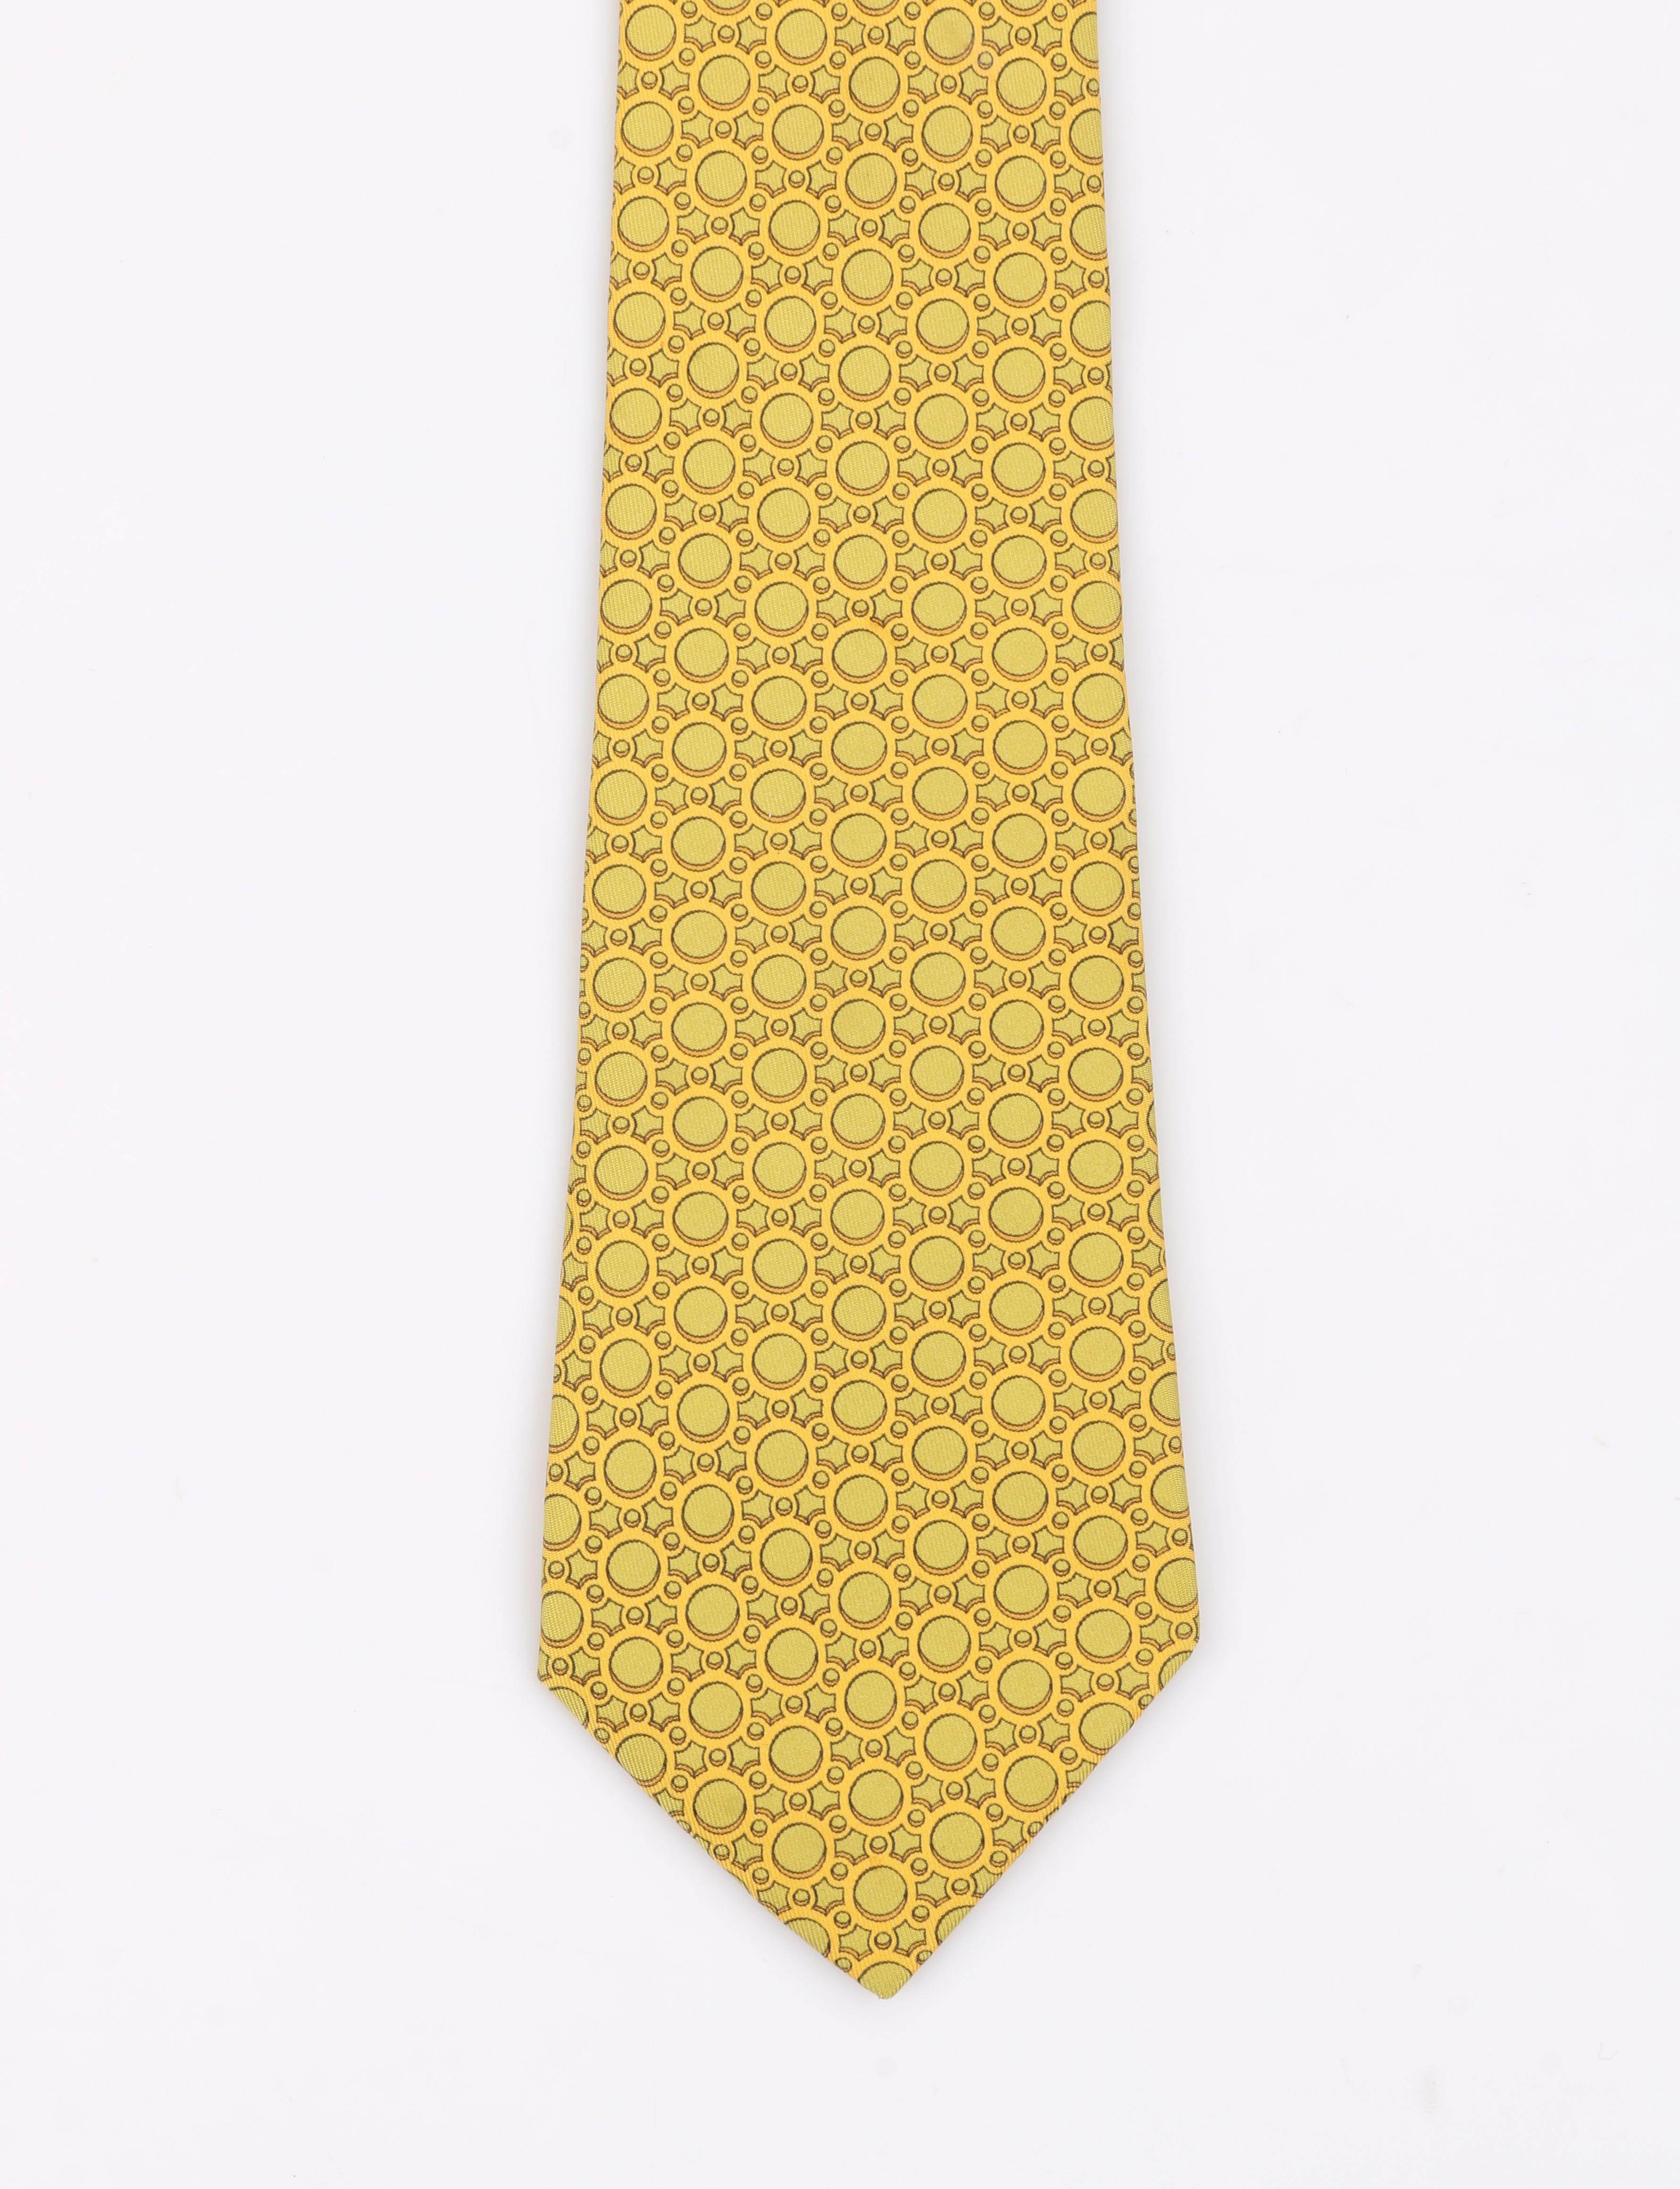  HERMÈS Cravate plissée en soie à imprimé géométrique vert chartreuse et jaune avec 5 plis 7774 FA Pour hommes 